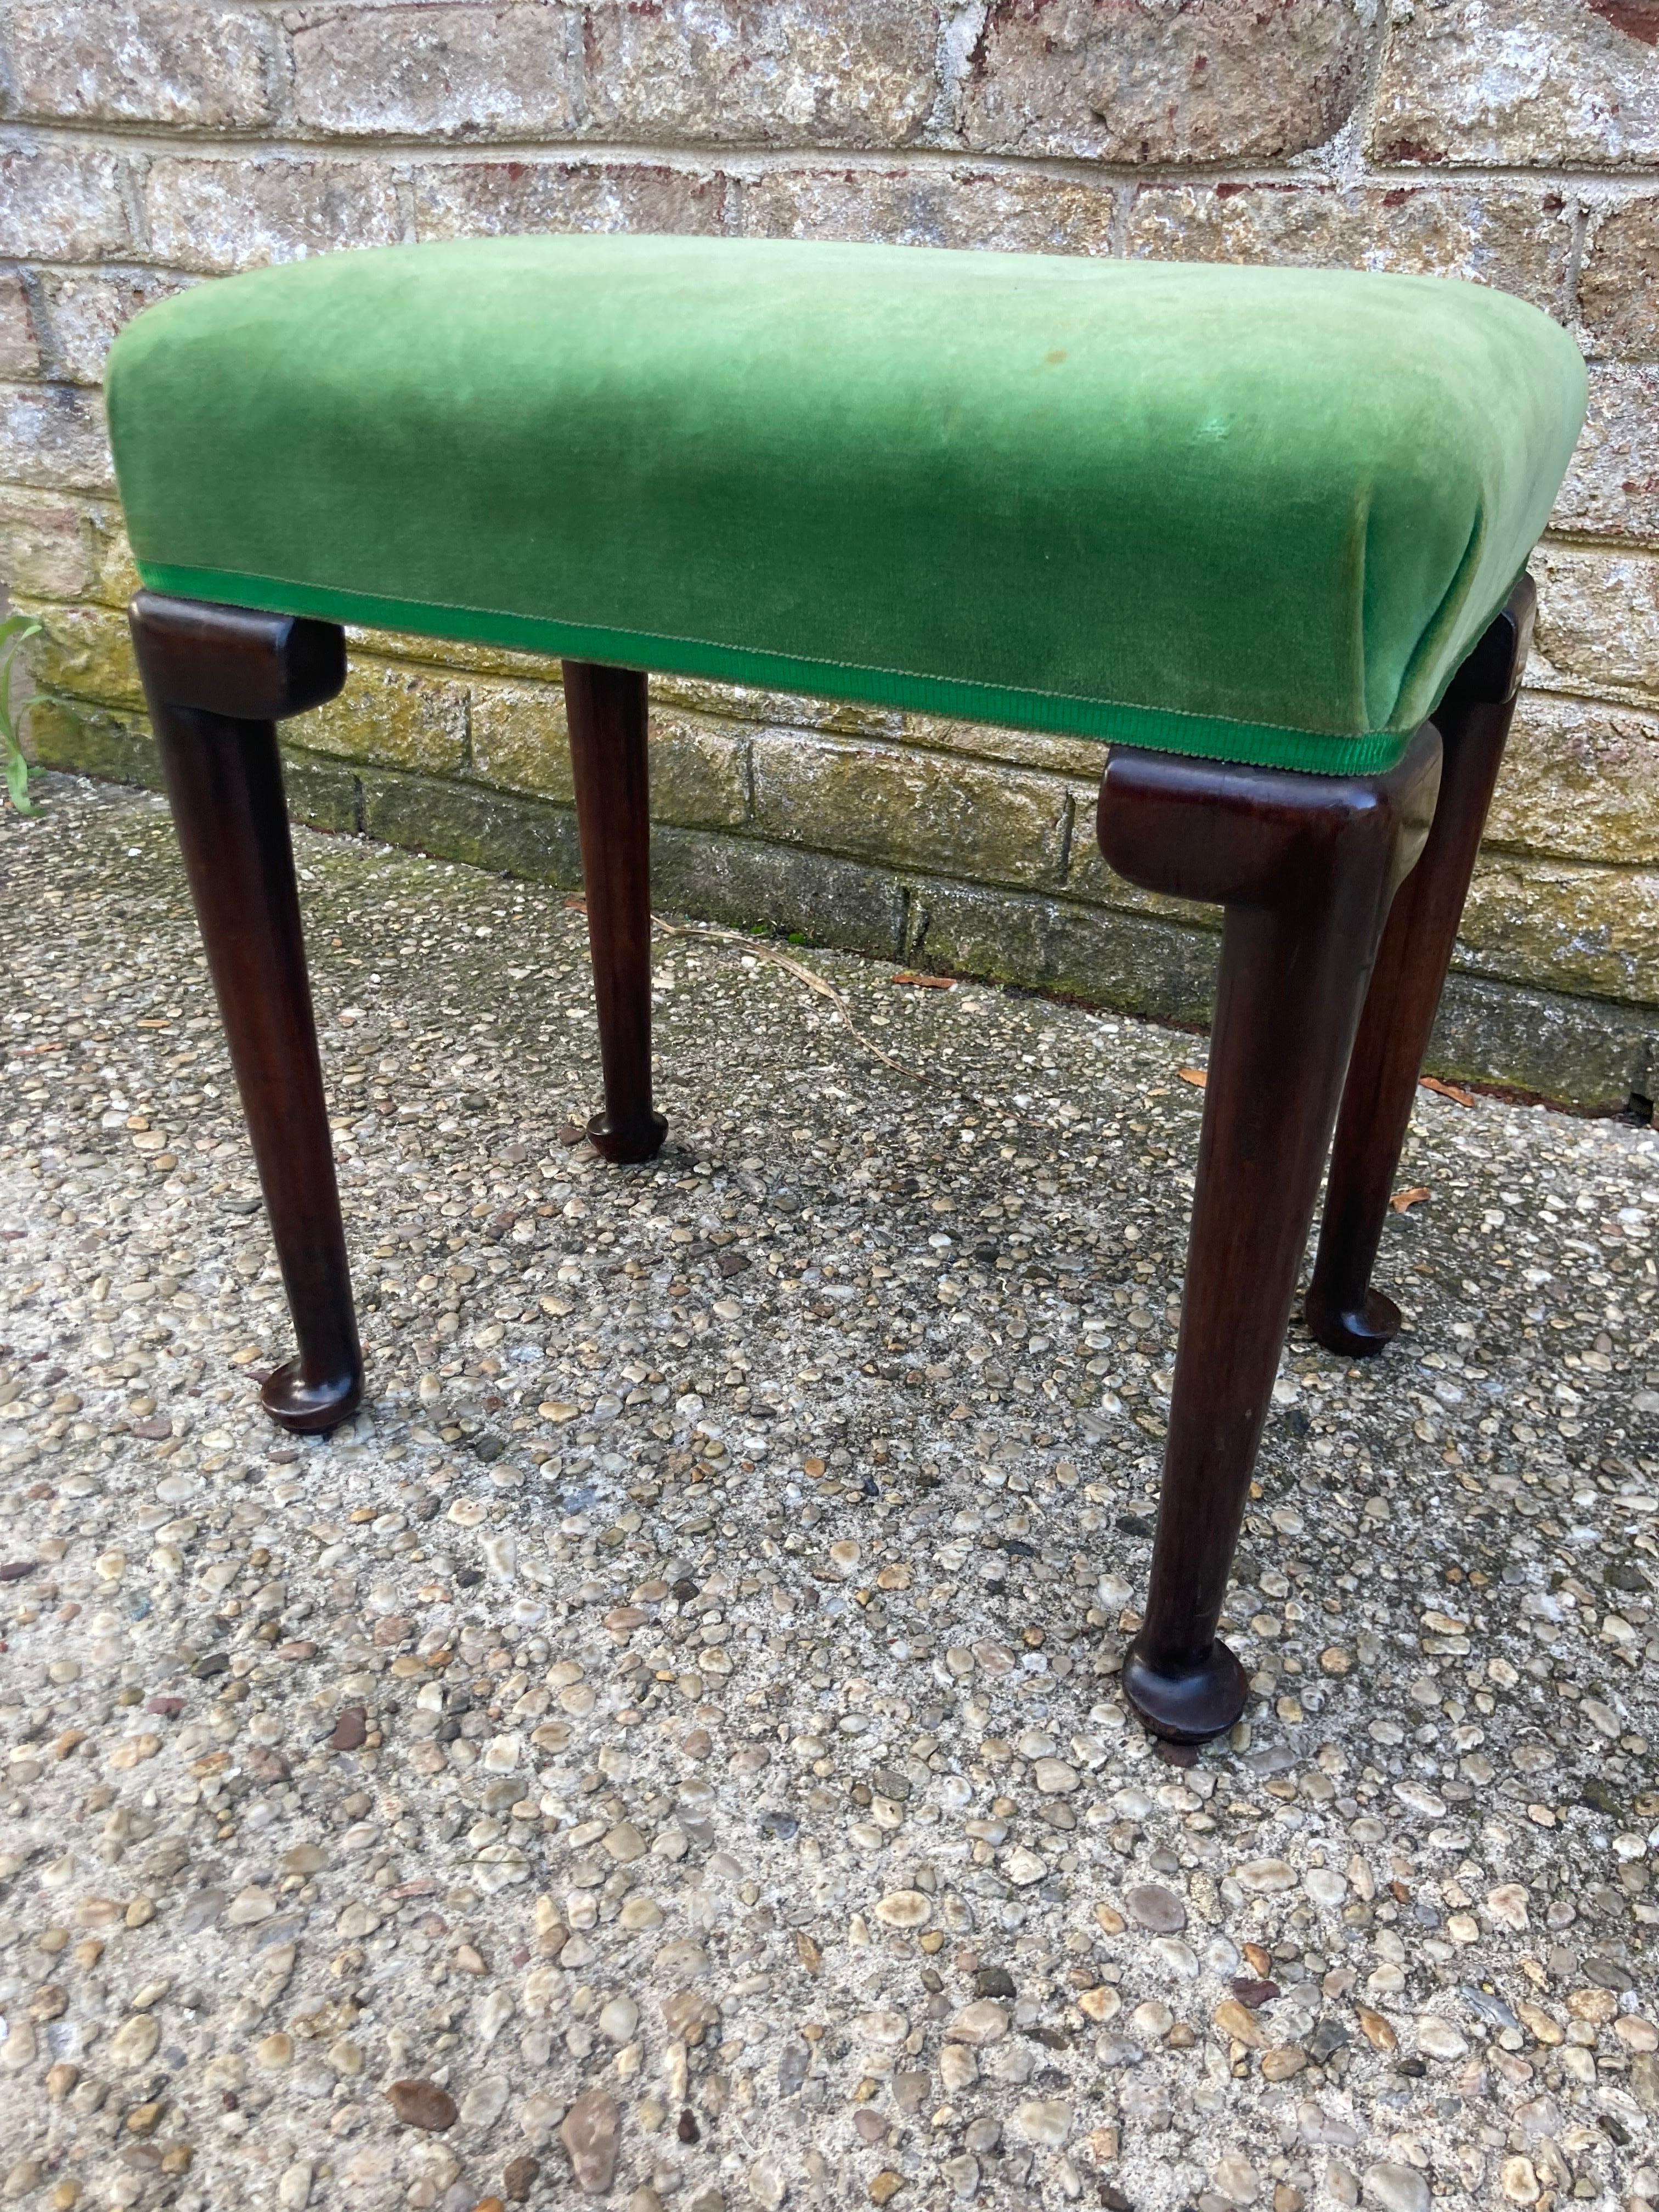 Lovely Queen Anne style upholstered stool in original green velvet and trim.